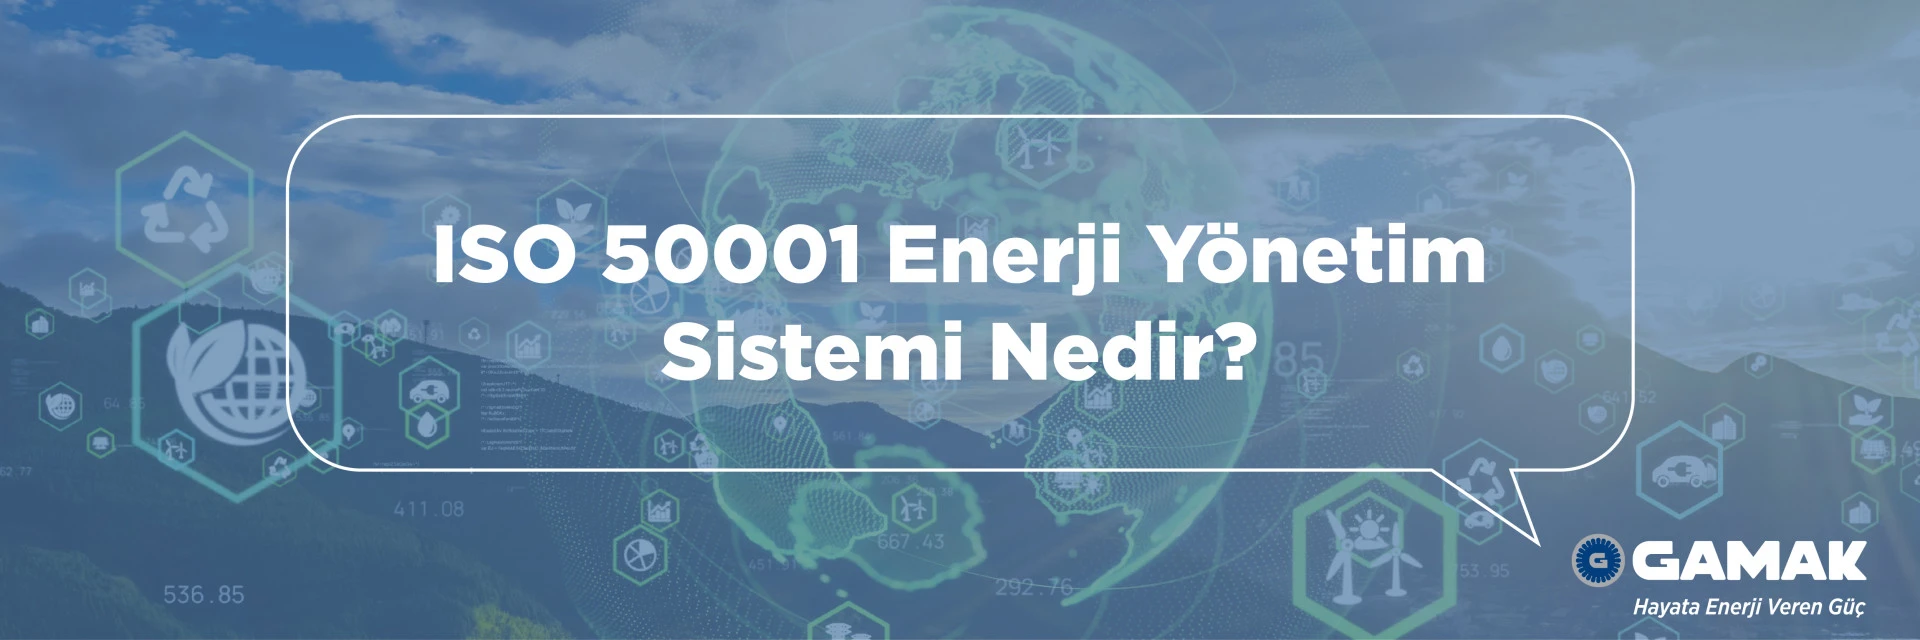 ISO 50001 Enerji Yönetim Sistemi Nedir? İşletmeler için Önemi Nedir?